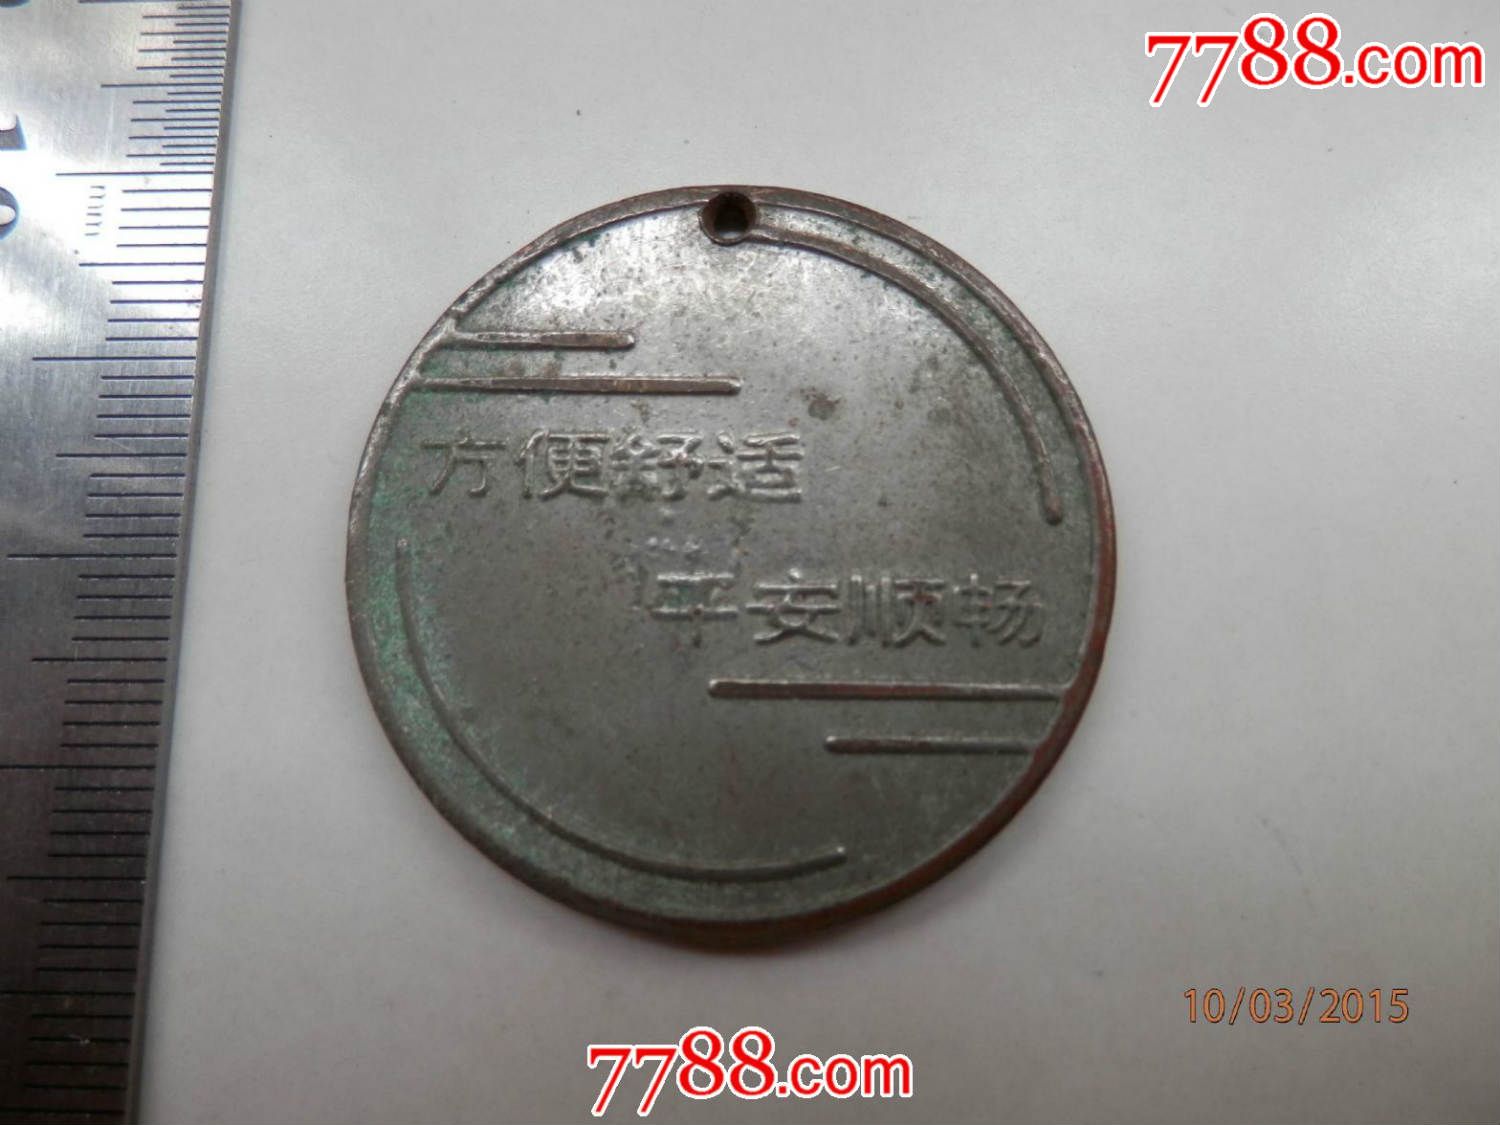 广州市长途汽车运输公司-价格:9.99元-se3246